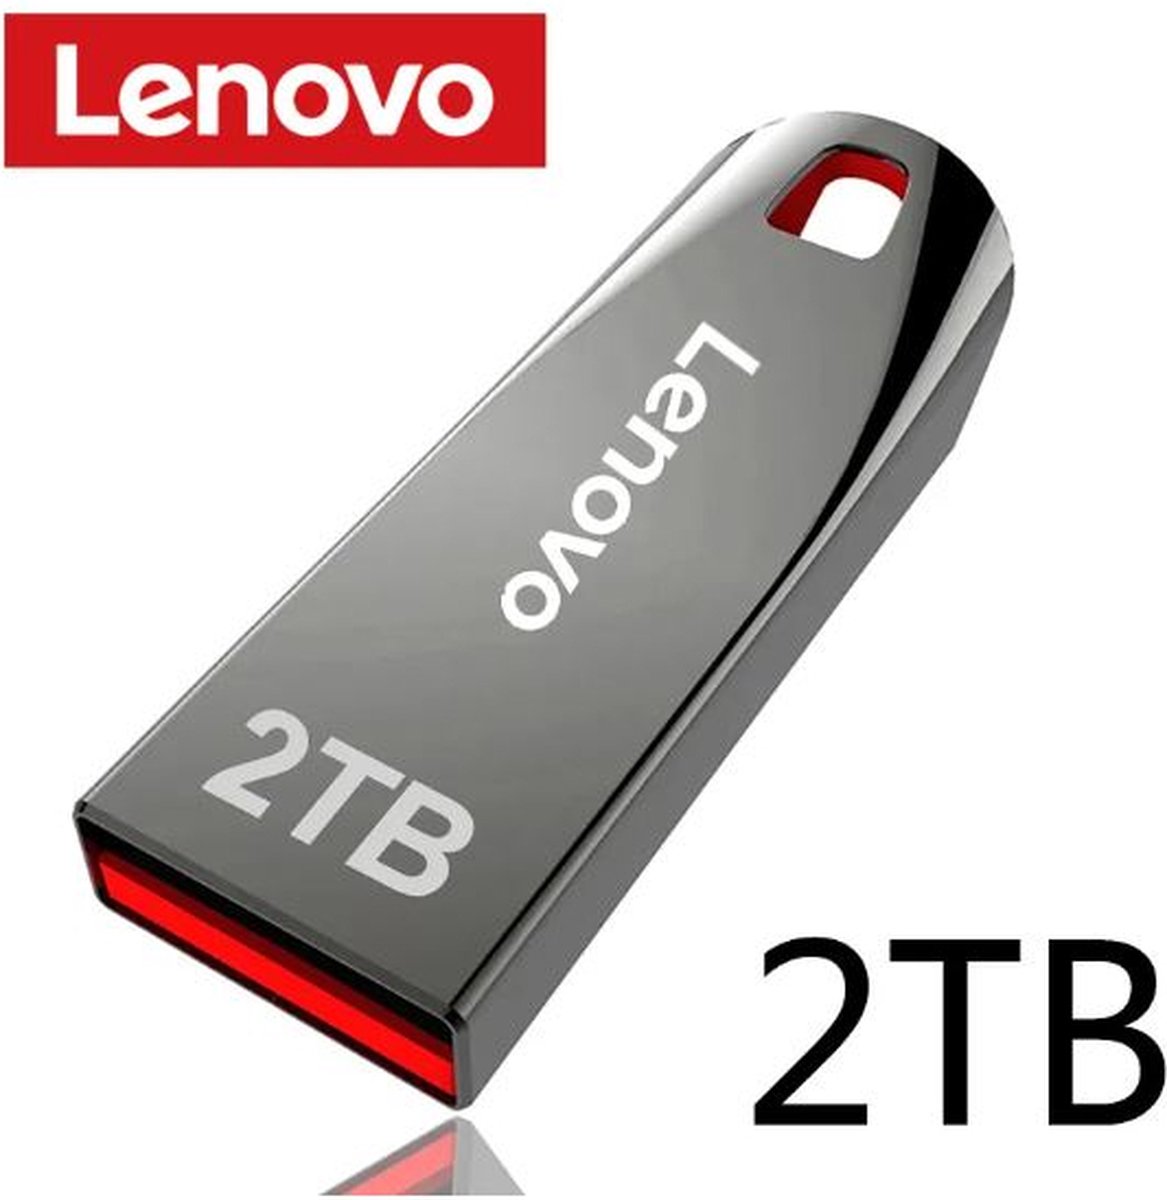 Lenovo-Clé USB 3.0 en métal 2 To, clé USB haute vitesse 1 To 512